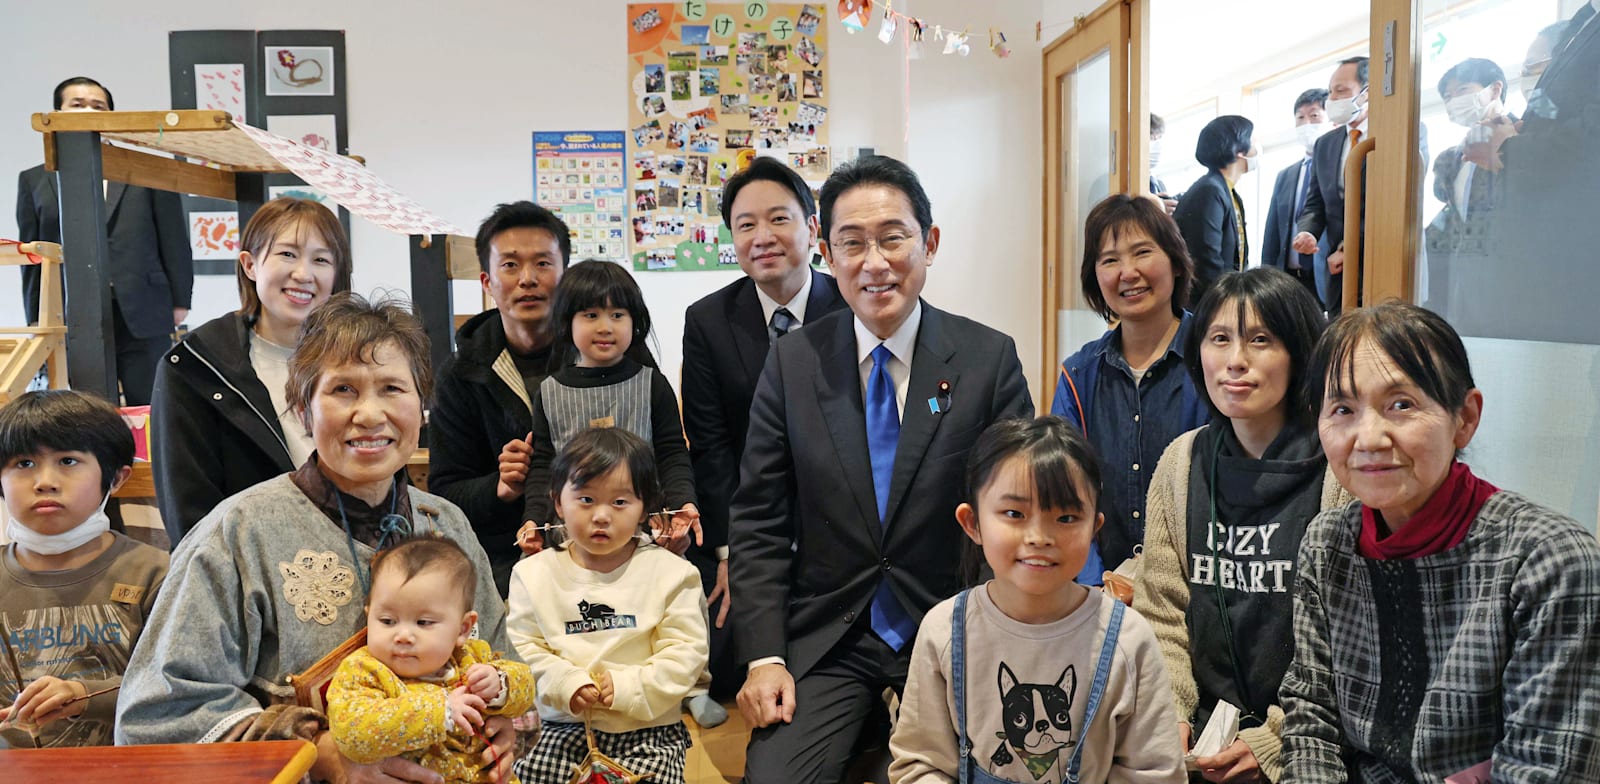 ראש ממשלת יפן, קישידה, מבקר בפעוטון בנאגי, חודש שעבר / צילום: Reuters, Yomiuri Shimbun